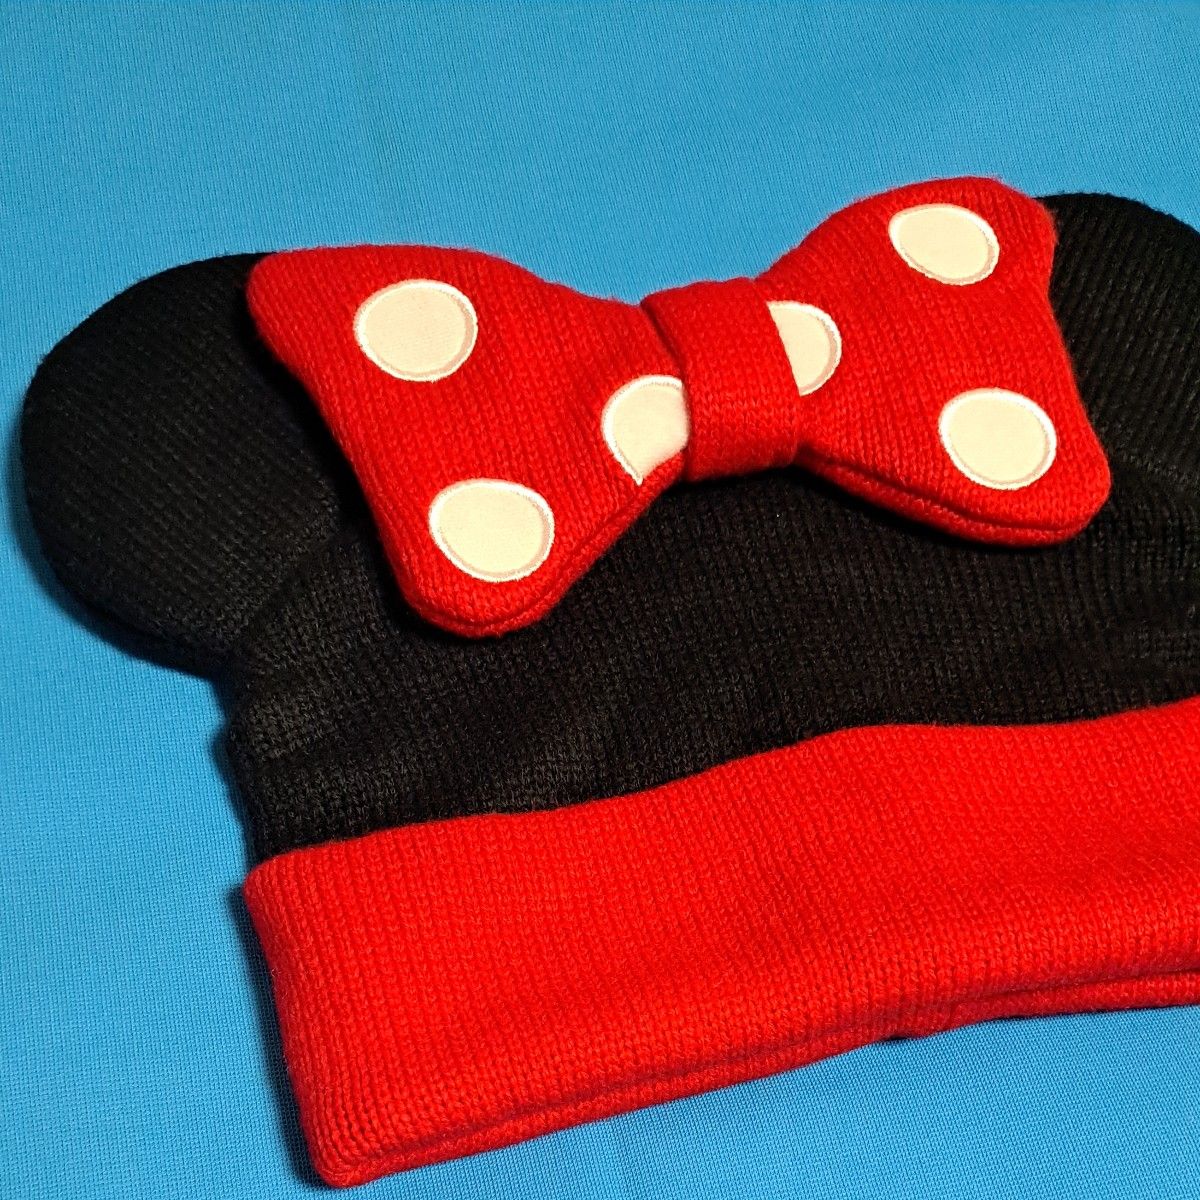 Disney ミニー ニット帽 リボン ビーニー 赤 黒 58cm 刺繍 ニットキャップ Minnie 帽子 ディズニーリゾート 